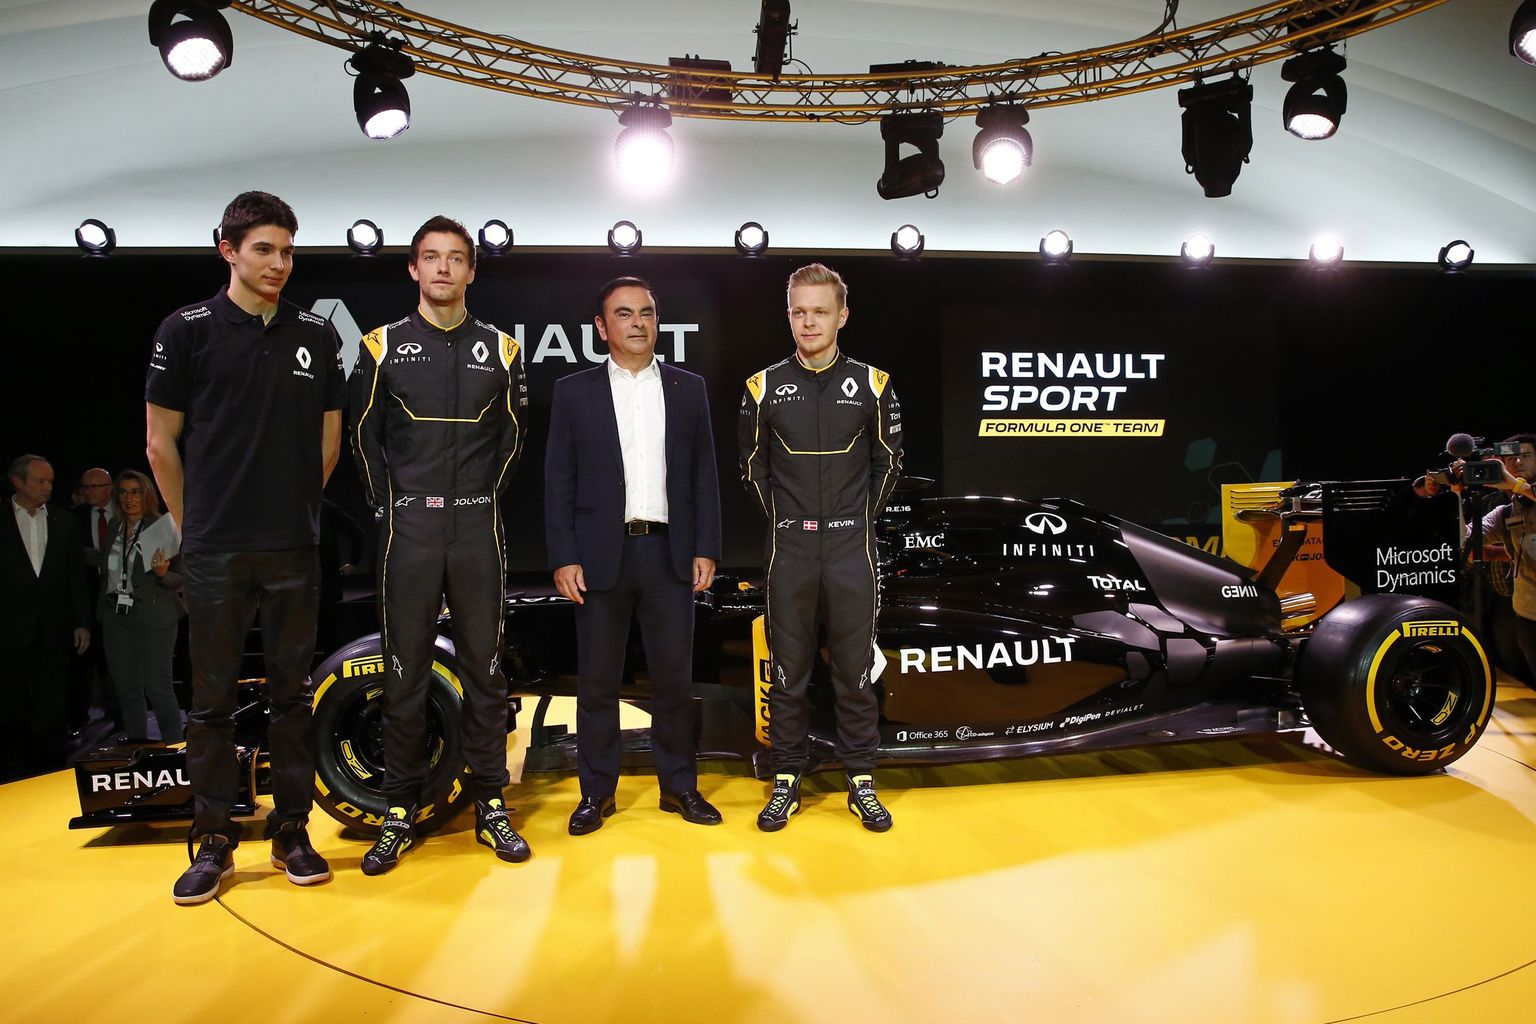 Tehasevõistkonnaga vormel-1 sarja naasvat Renault' tiimi esindasid varusõitja Esteban Ocon (vasakult), sarja uustulnuk Jolyon Palmer, firma tegevjuht Carlos Ghosn ning alles nädala alguses tiimiga lepingu sõlminud Kevin Magnussen.